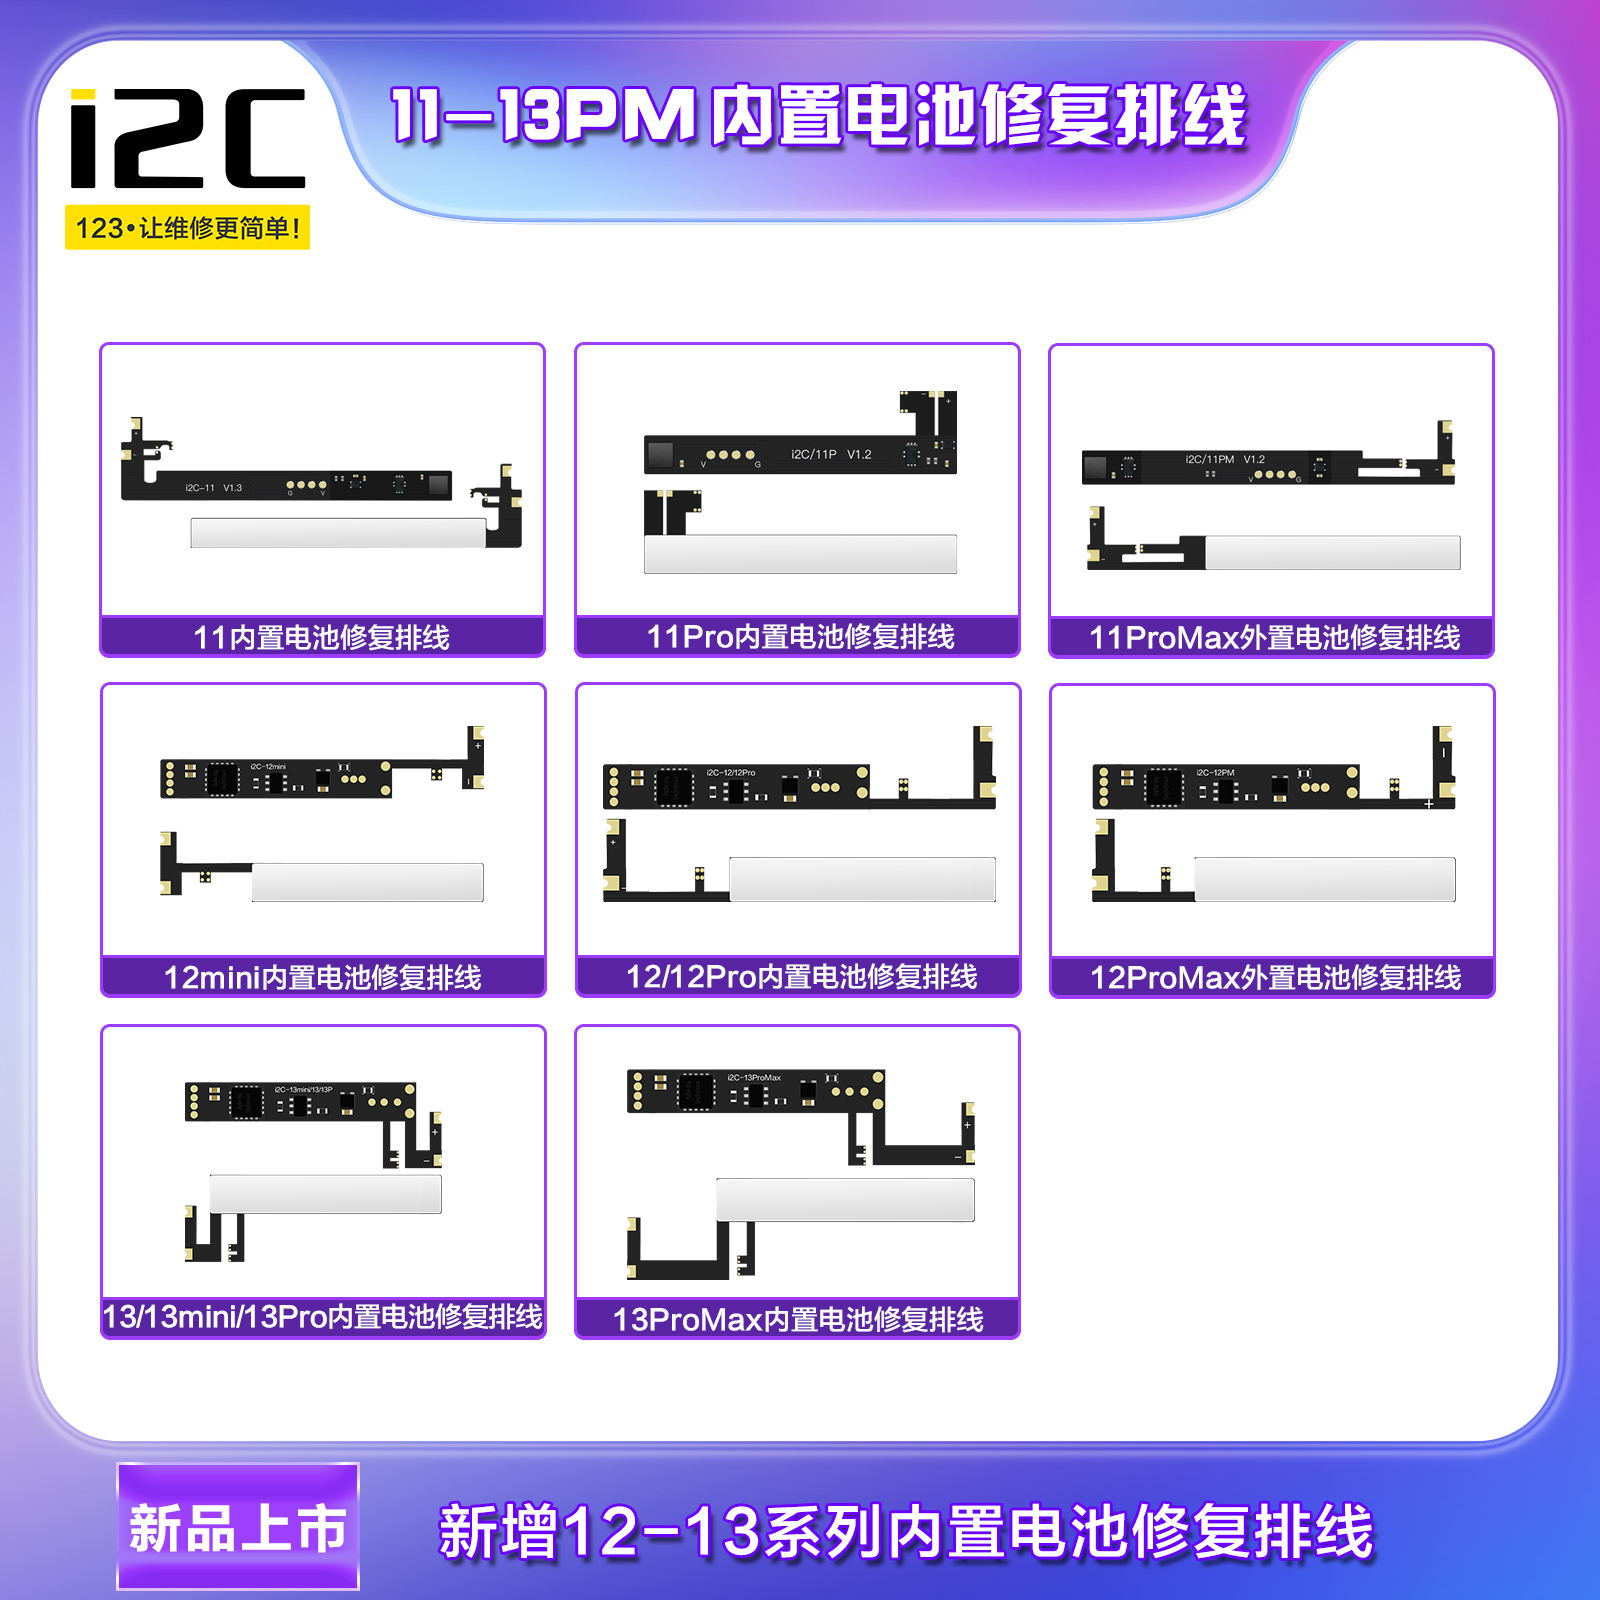 i2C 11-13PM内置电池修复排线 支持电池修复仪BR-13(图1)